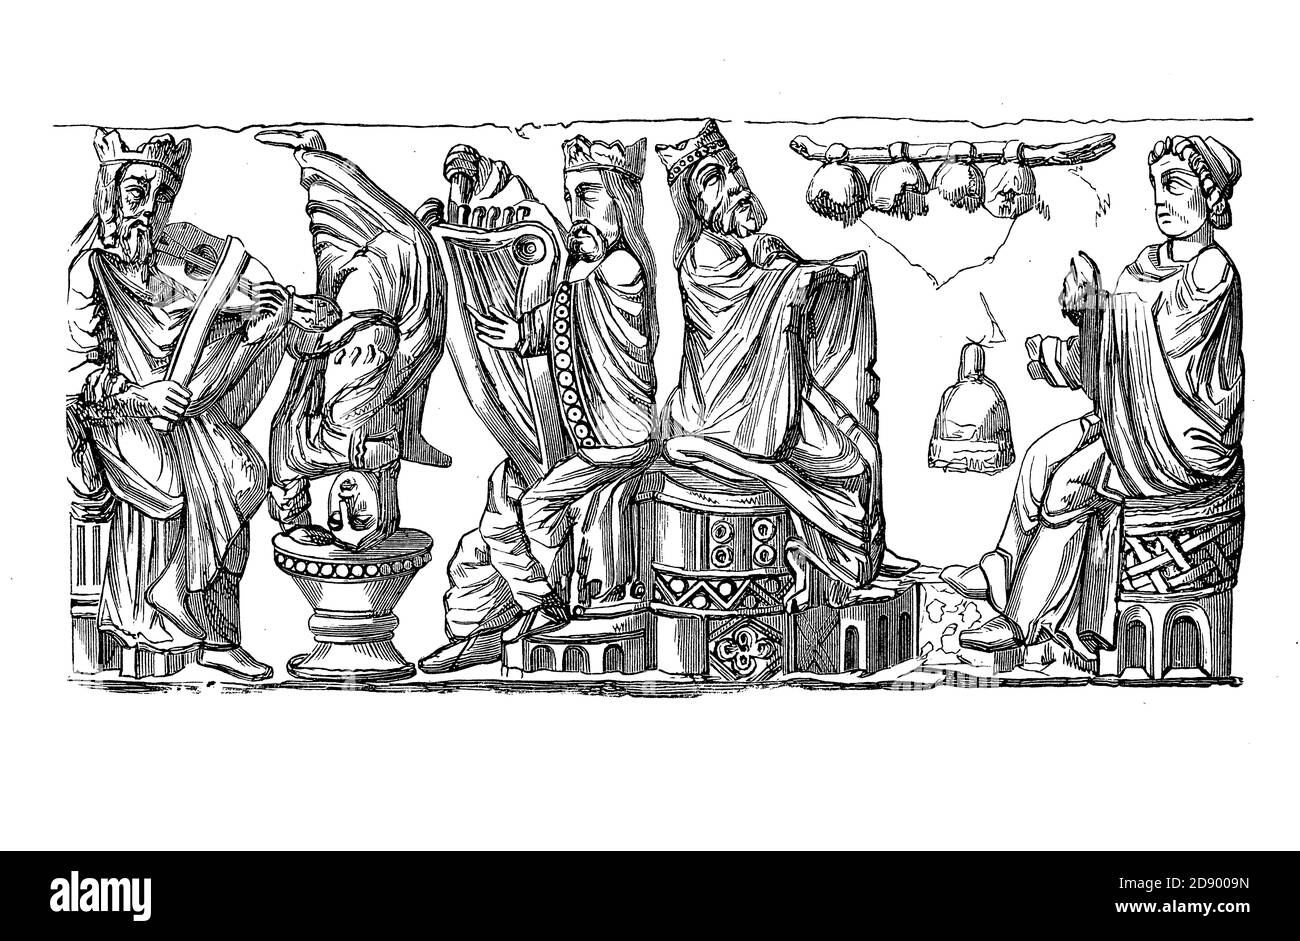 Spectacle musical médiéval : personnages nobles jouant des instruments de cordes et des cloches, et un jester à l'envers, bas-relief du XIe siècle Banque D'Images